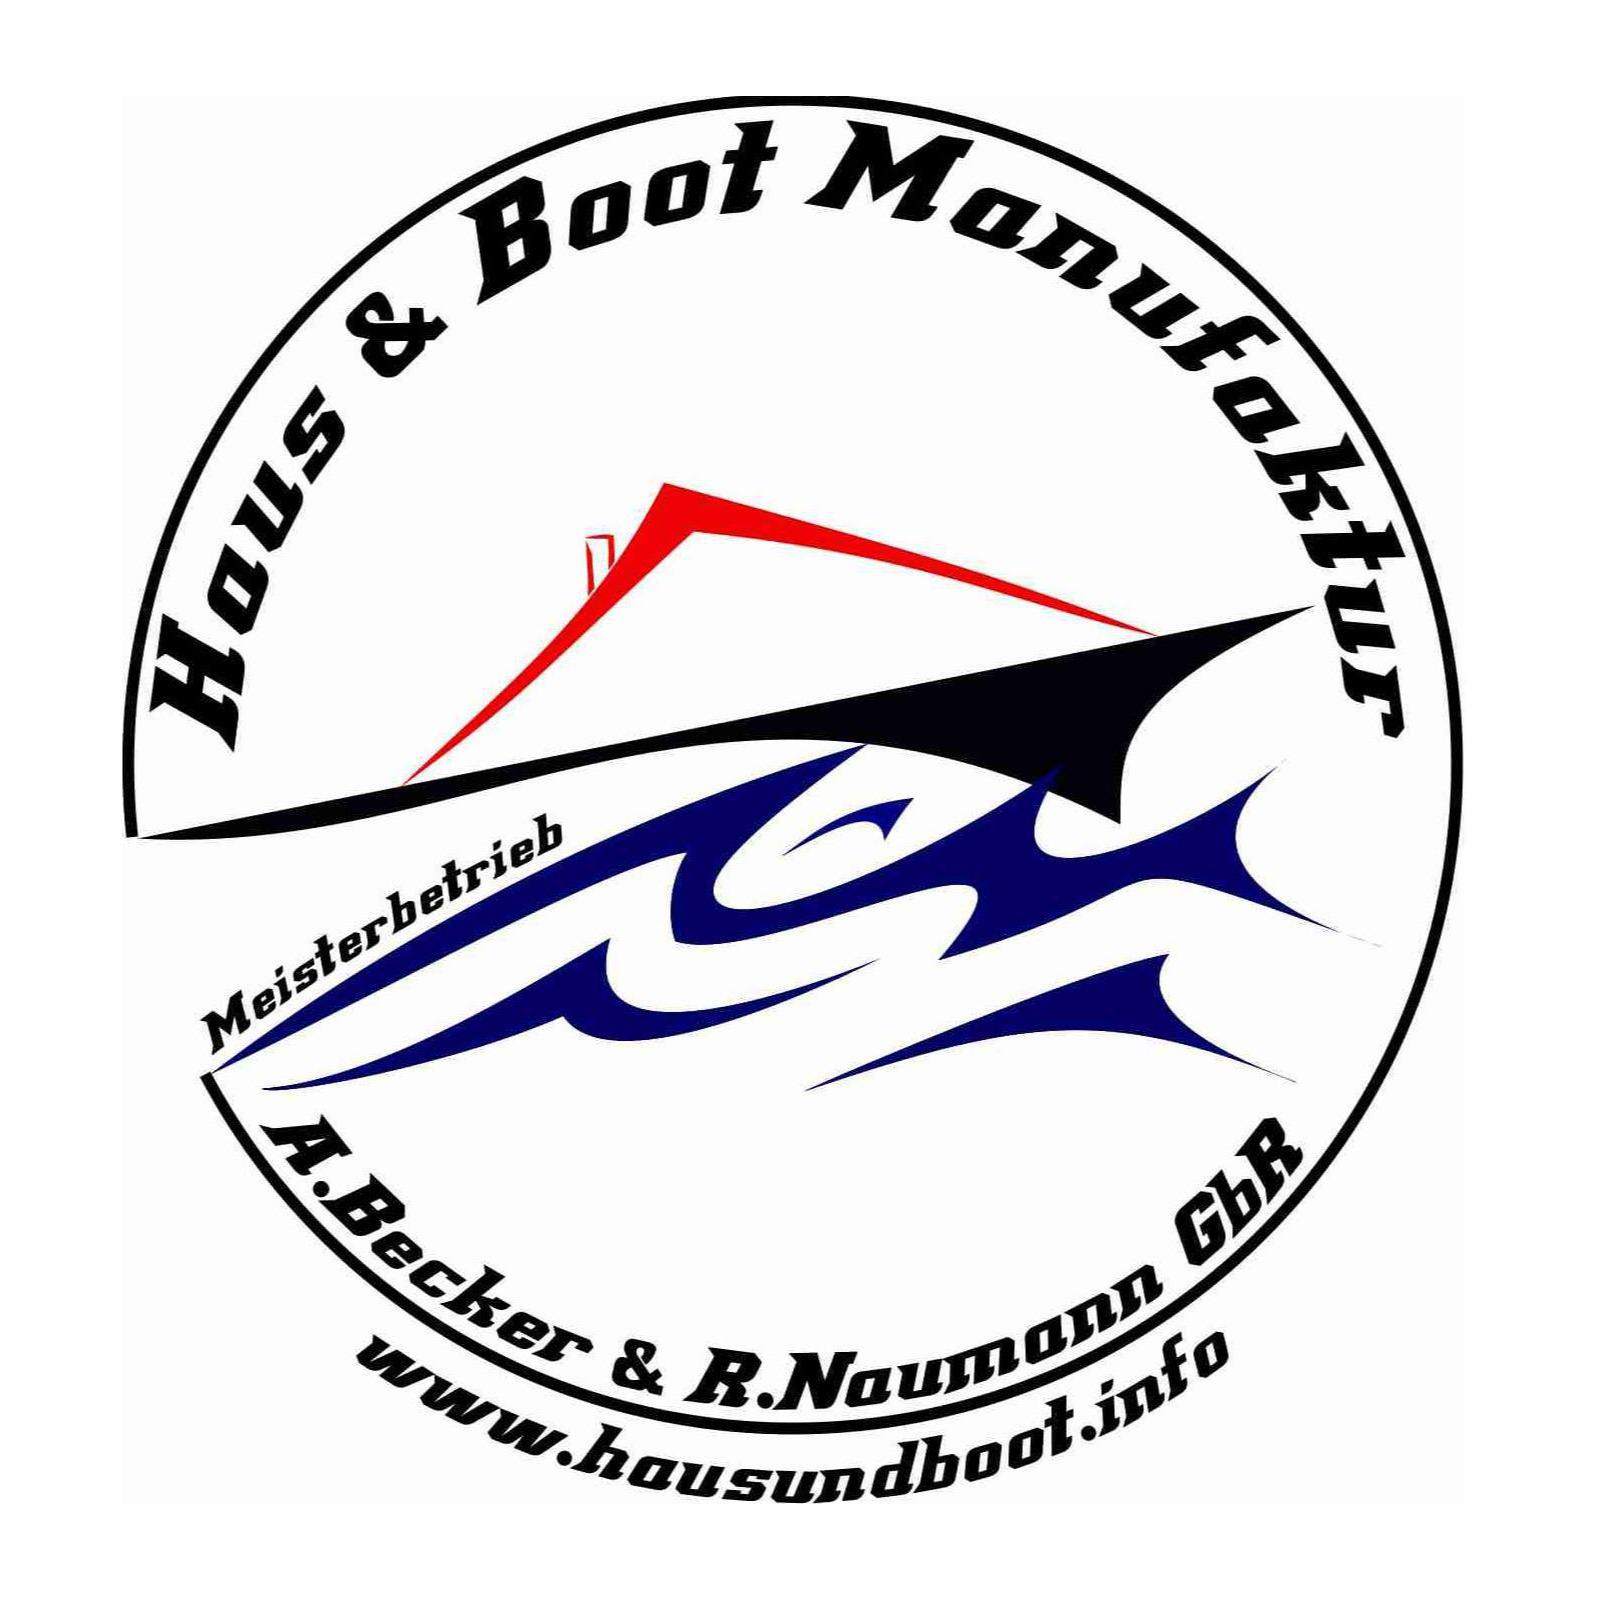 Haus & Boot Manufaktur GbR Ges. Andre Becker u. Robert Naumann Logo